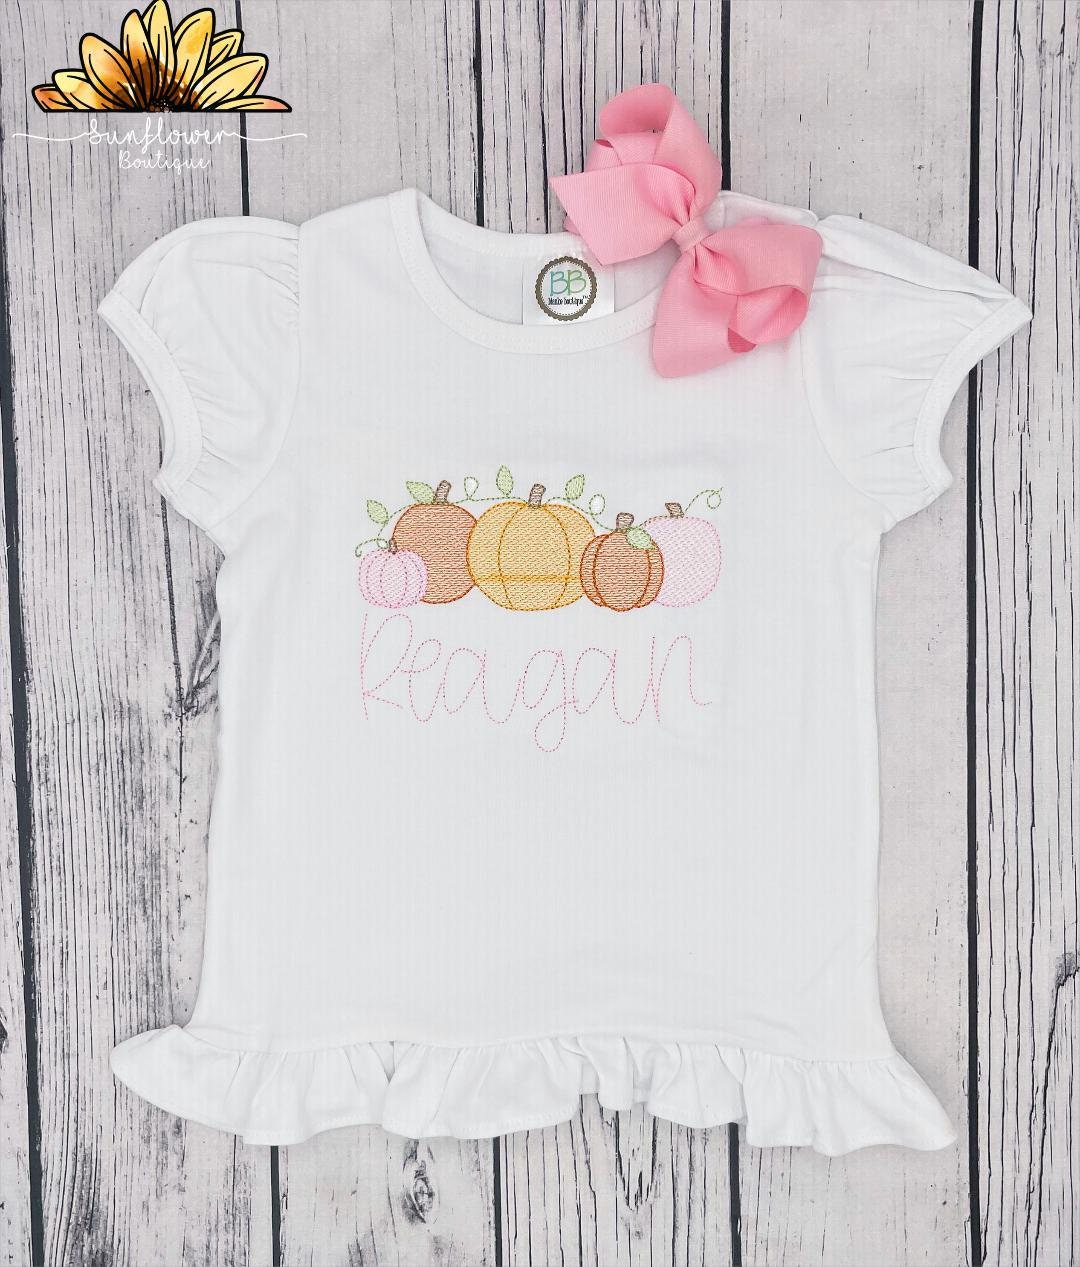 Discover Pumpkin Patch Shirt/ Pumpkin Patch Outfit/ Girl's Pumpkin Patch Outfit/ Girl's Pumpkin Patch Shirt/ Pumpkin Shirt/ Fall Shirt/ Halloween